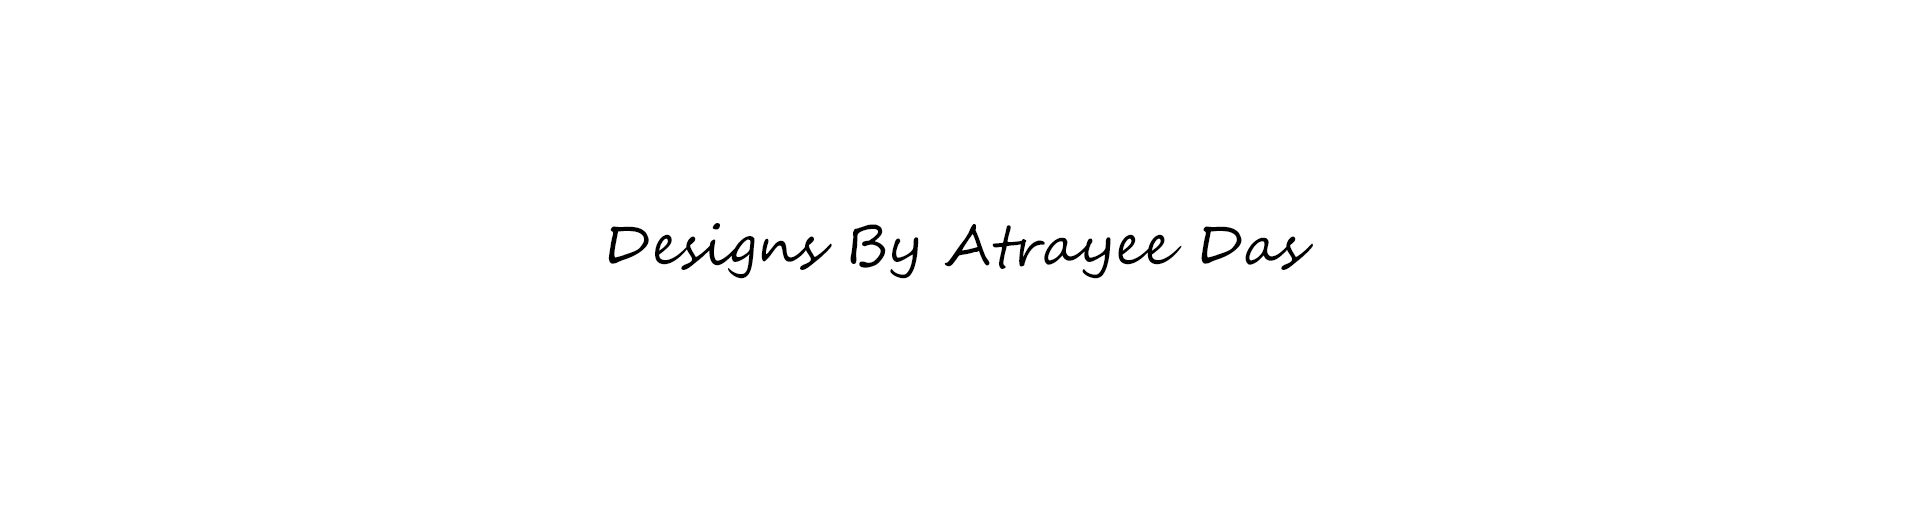 Atrayee Das